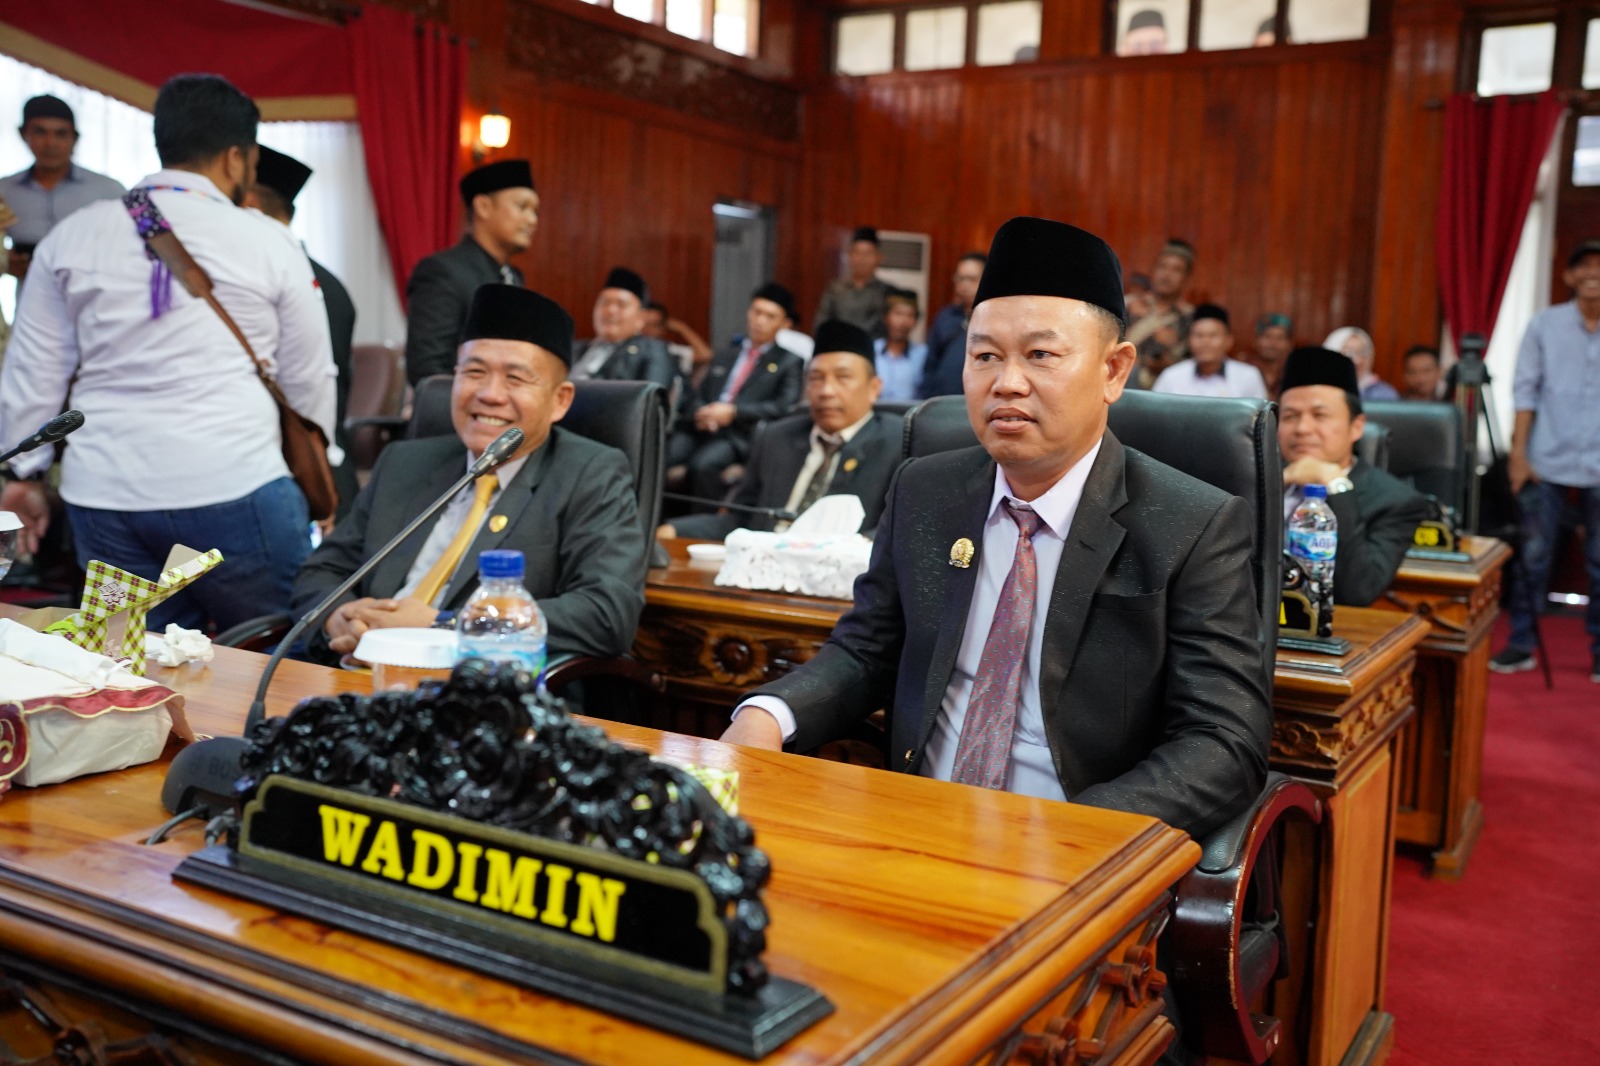  Wadimin  Resmi Jadi Anggota DPRD Bengkulu Selatan-Manna